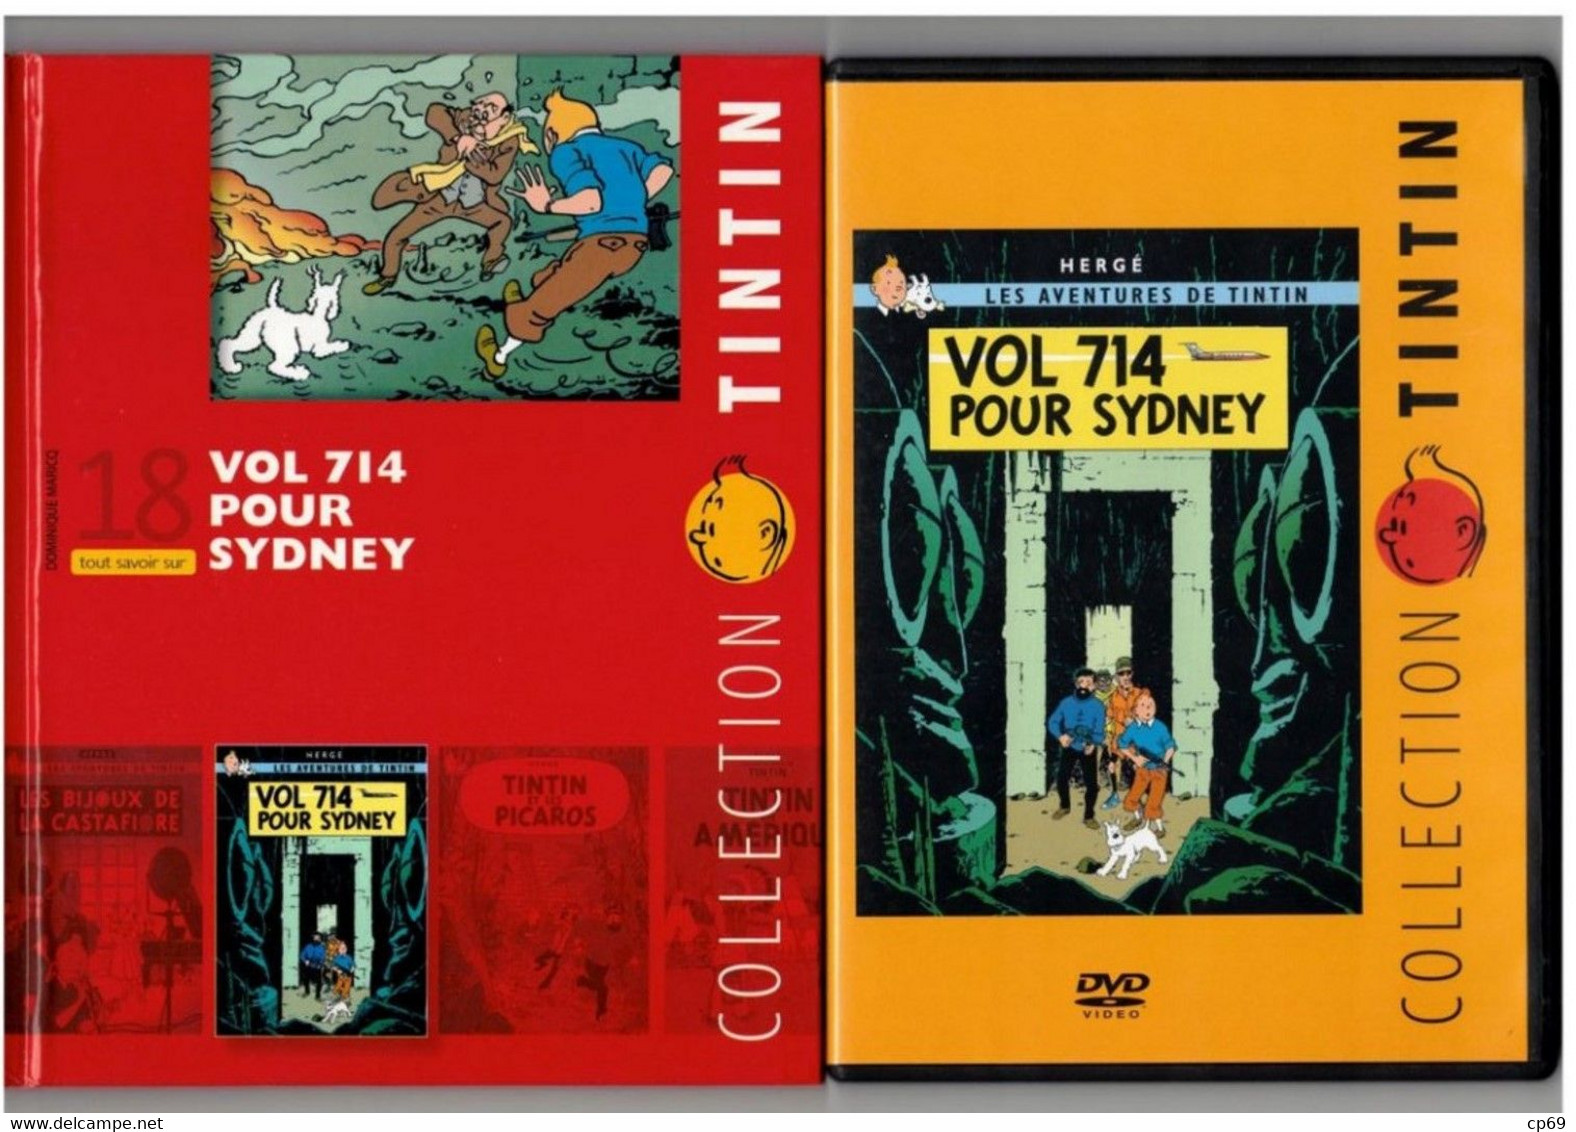 Tintin Hergé/Moulinsart 2010 Milou Chien Dog Cane Vol 714 Pour Sydney N°18 Capitaine Haddock DVD + Livret Explicatif B.E - Animation